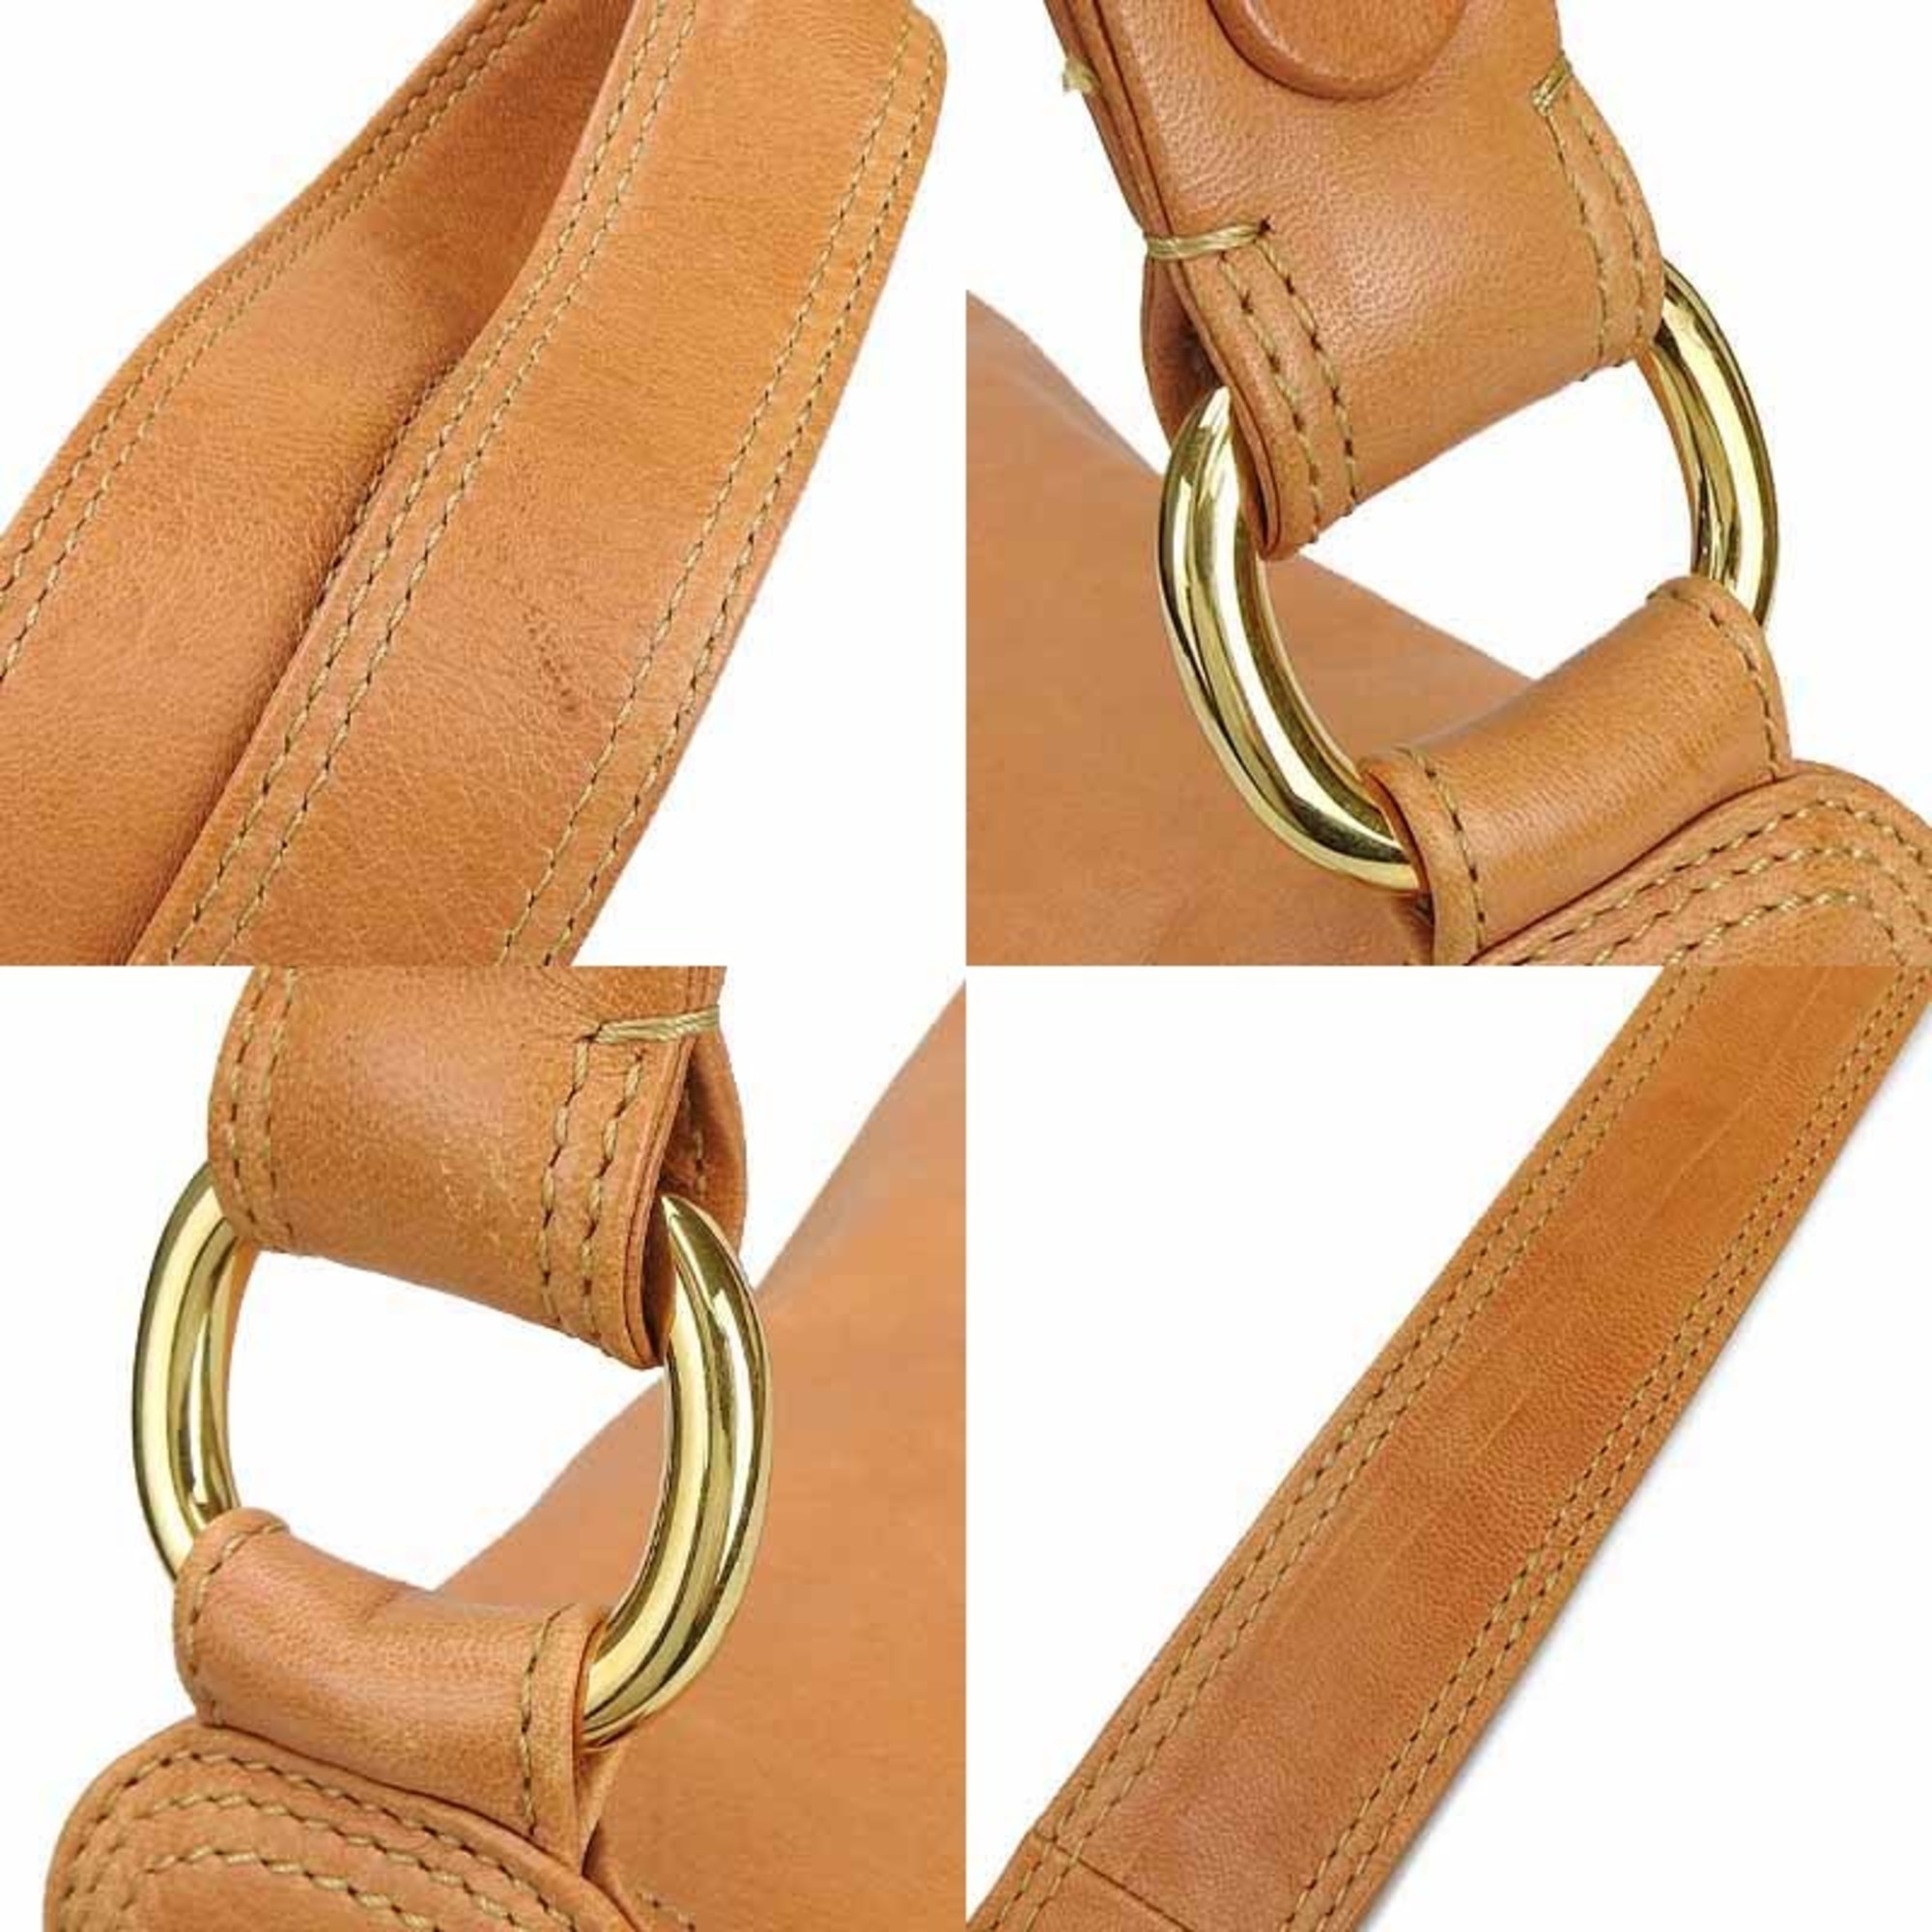 Celine CELINE shoulder bag camel side pocket leather ladies